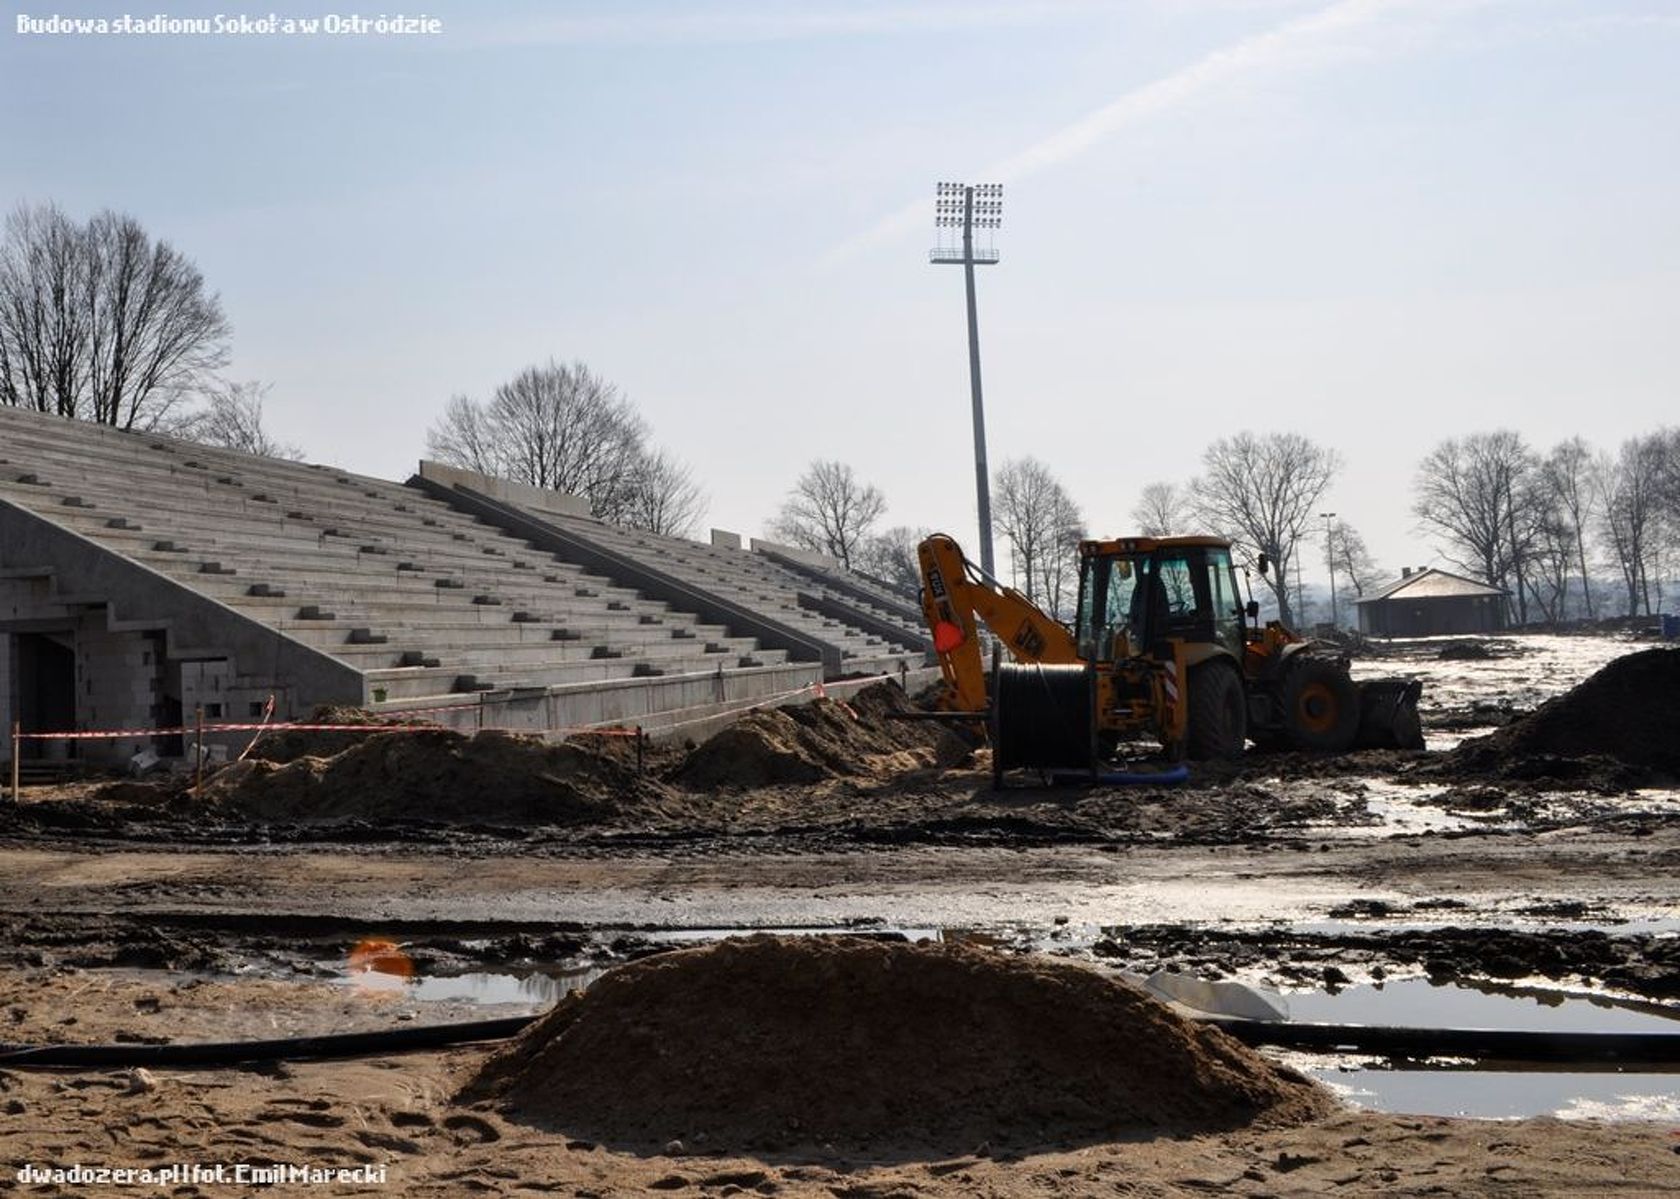 Budowany stadion w Ostródzie będzie latem areną najważniejszych wydarzeń piłkarskich w regionie. Fot. Emil Marecki 